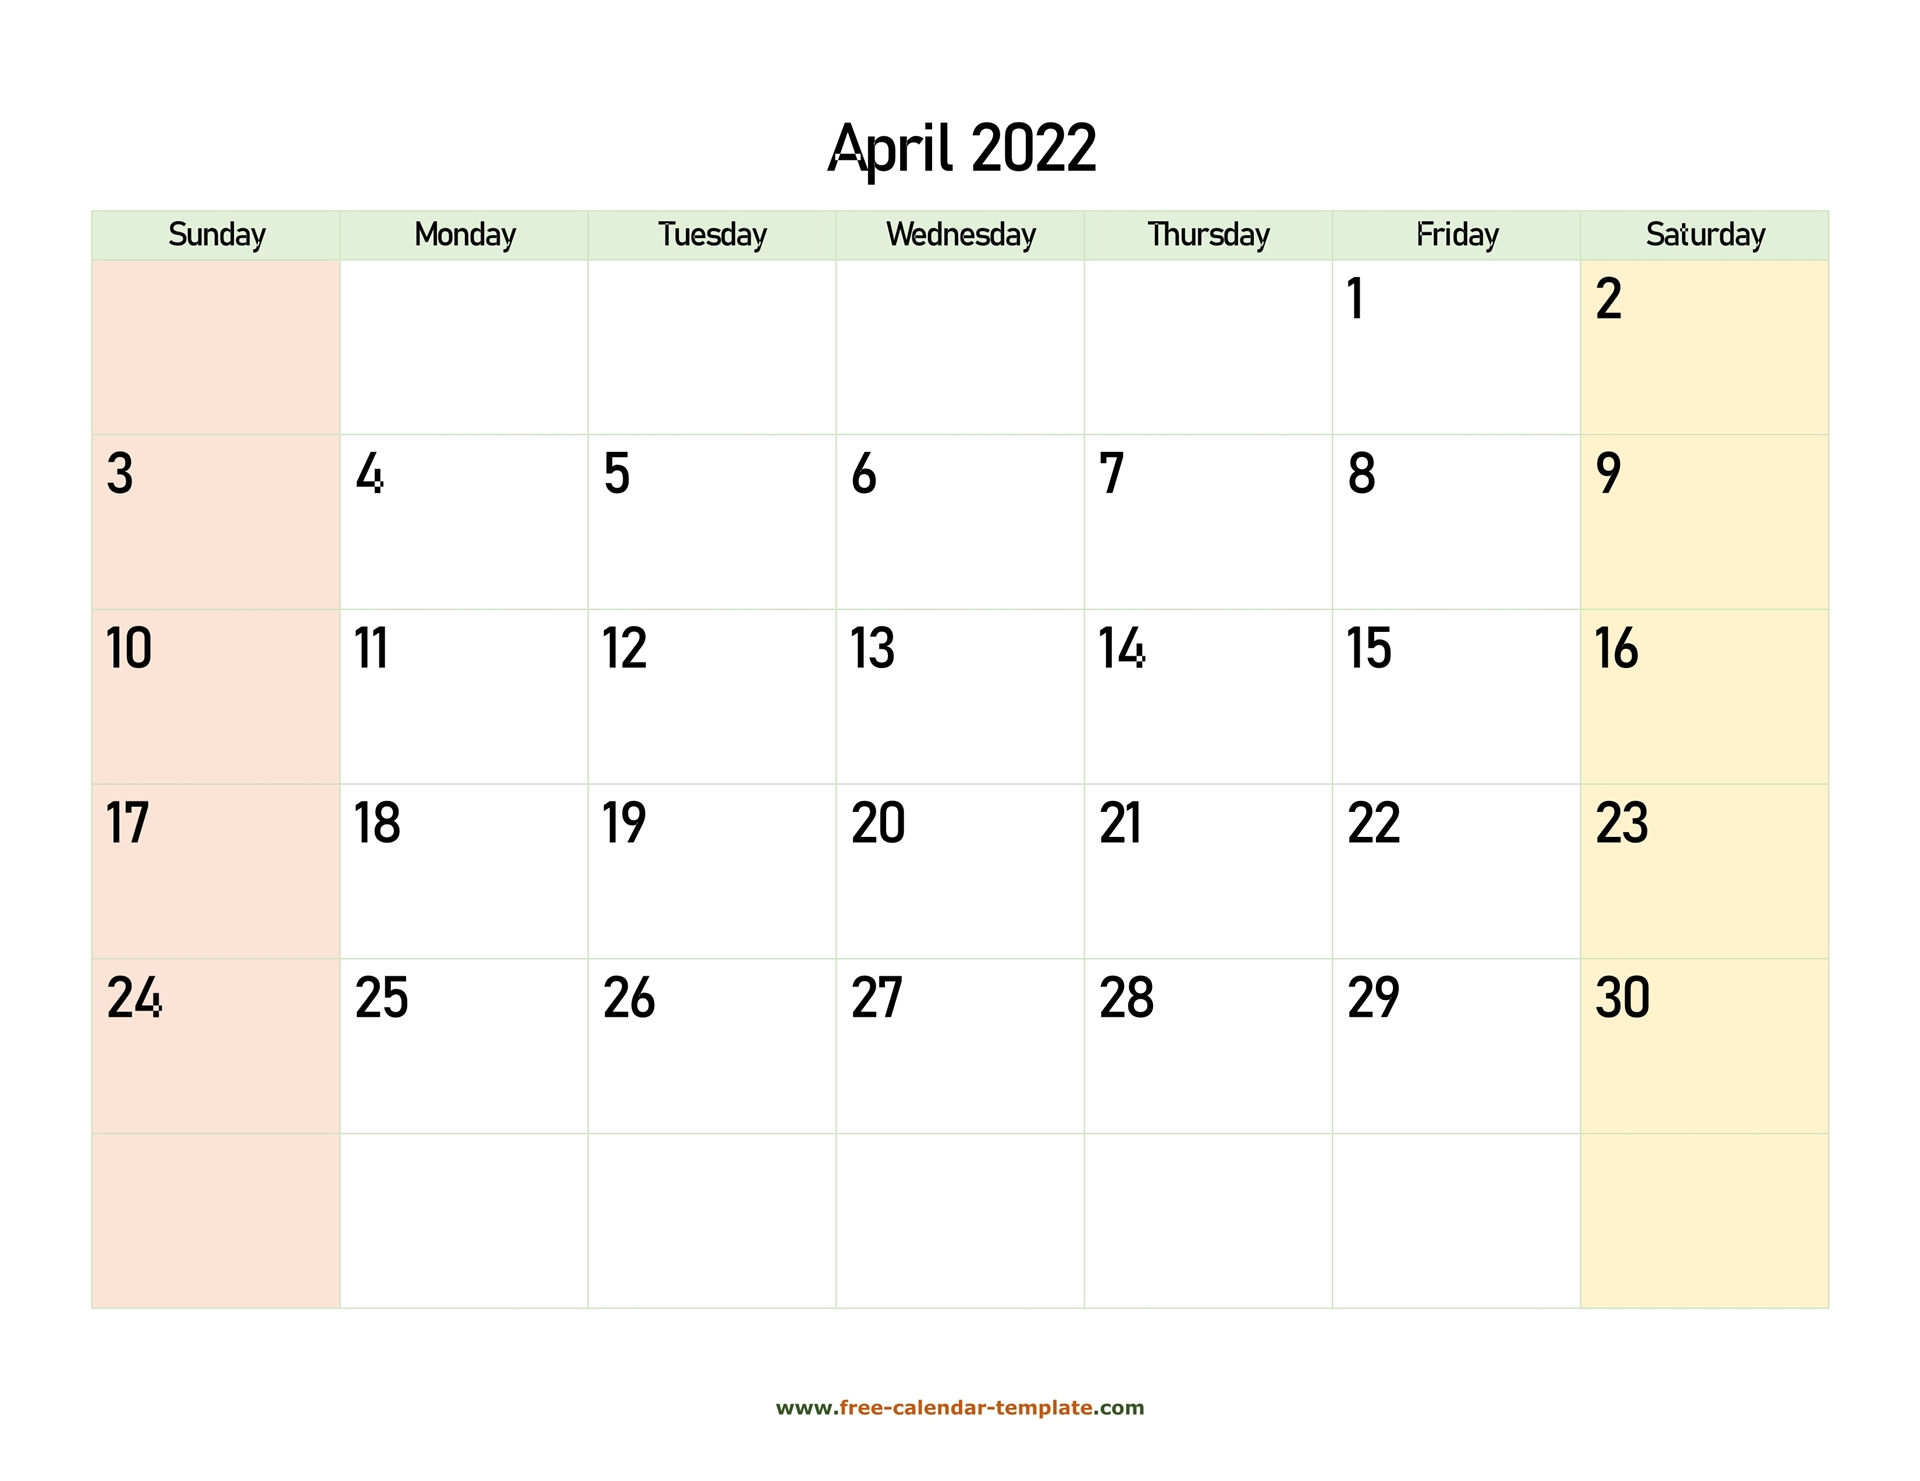 Collect April 2022 Calendar Image